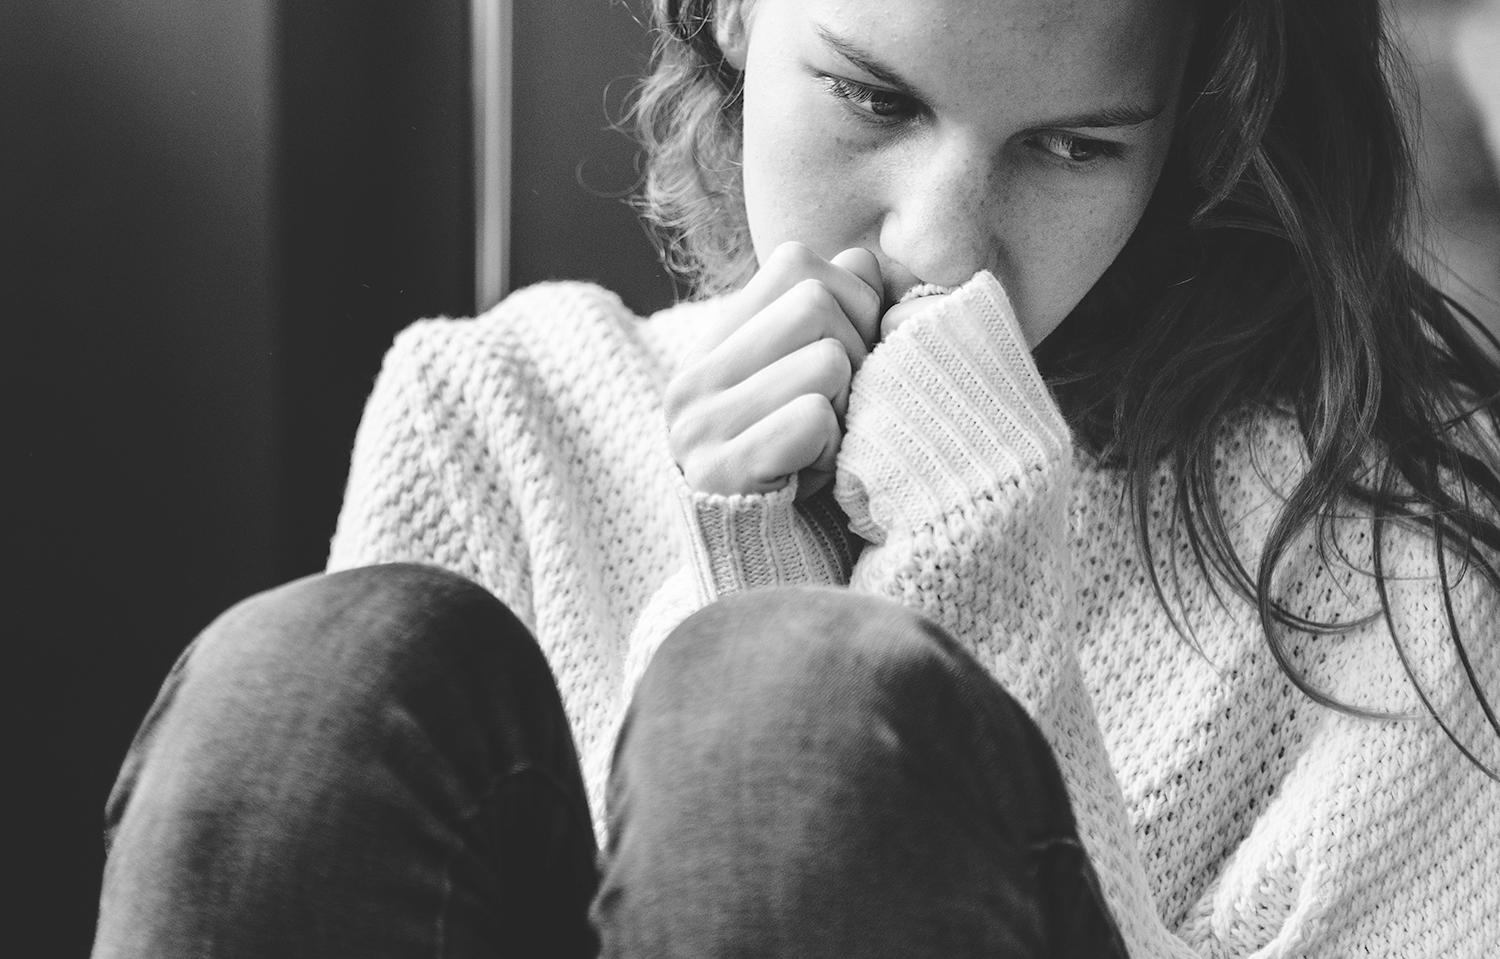 Depresión en adolescentes II: las autolesiones